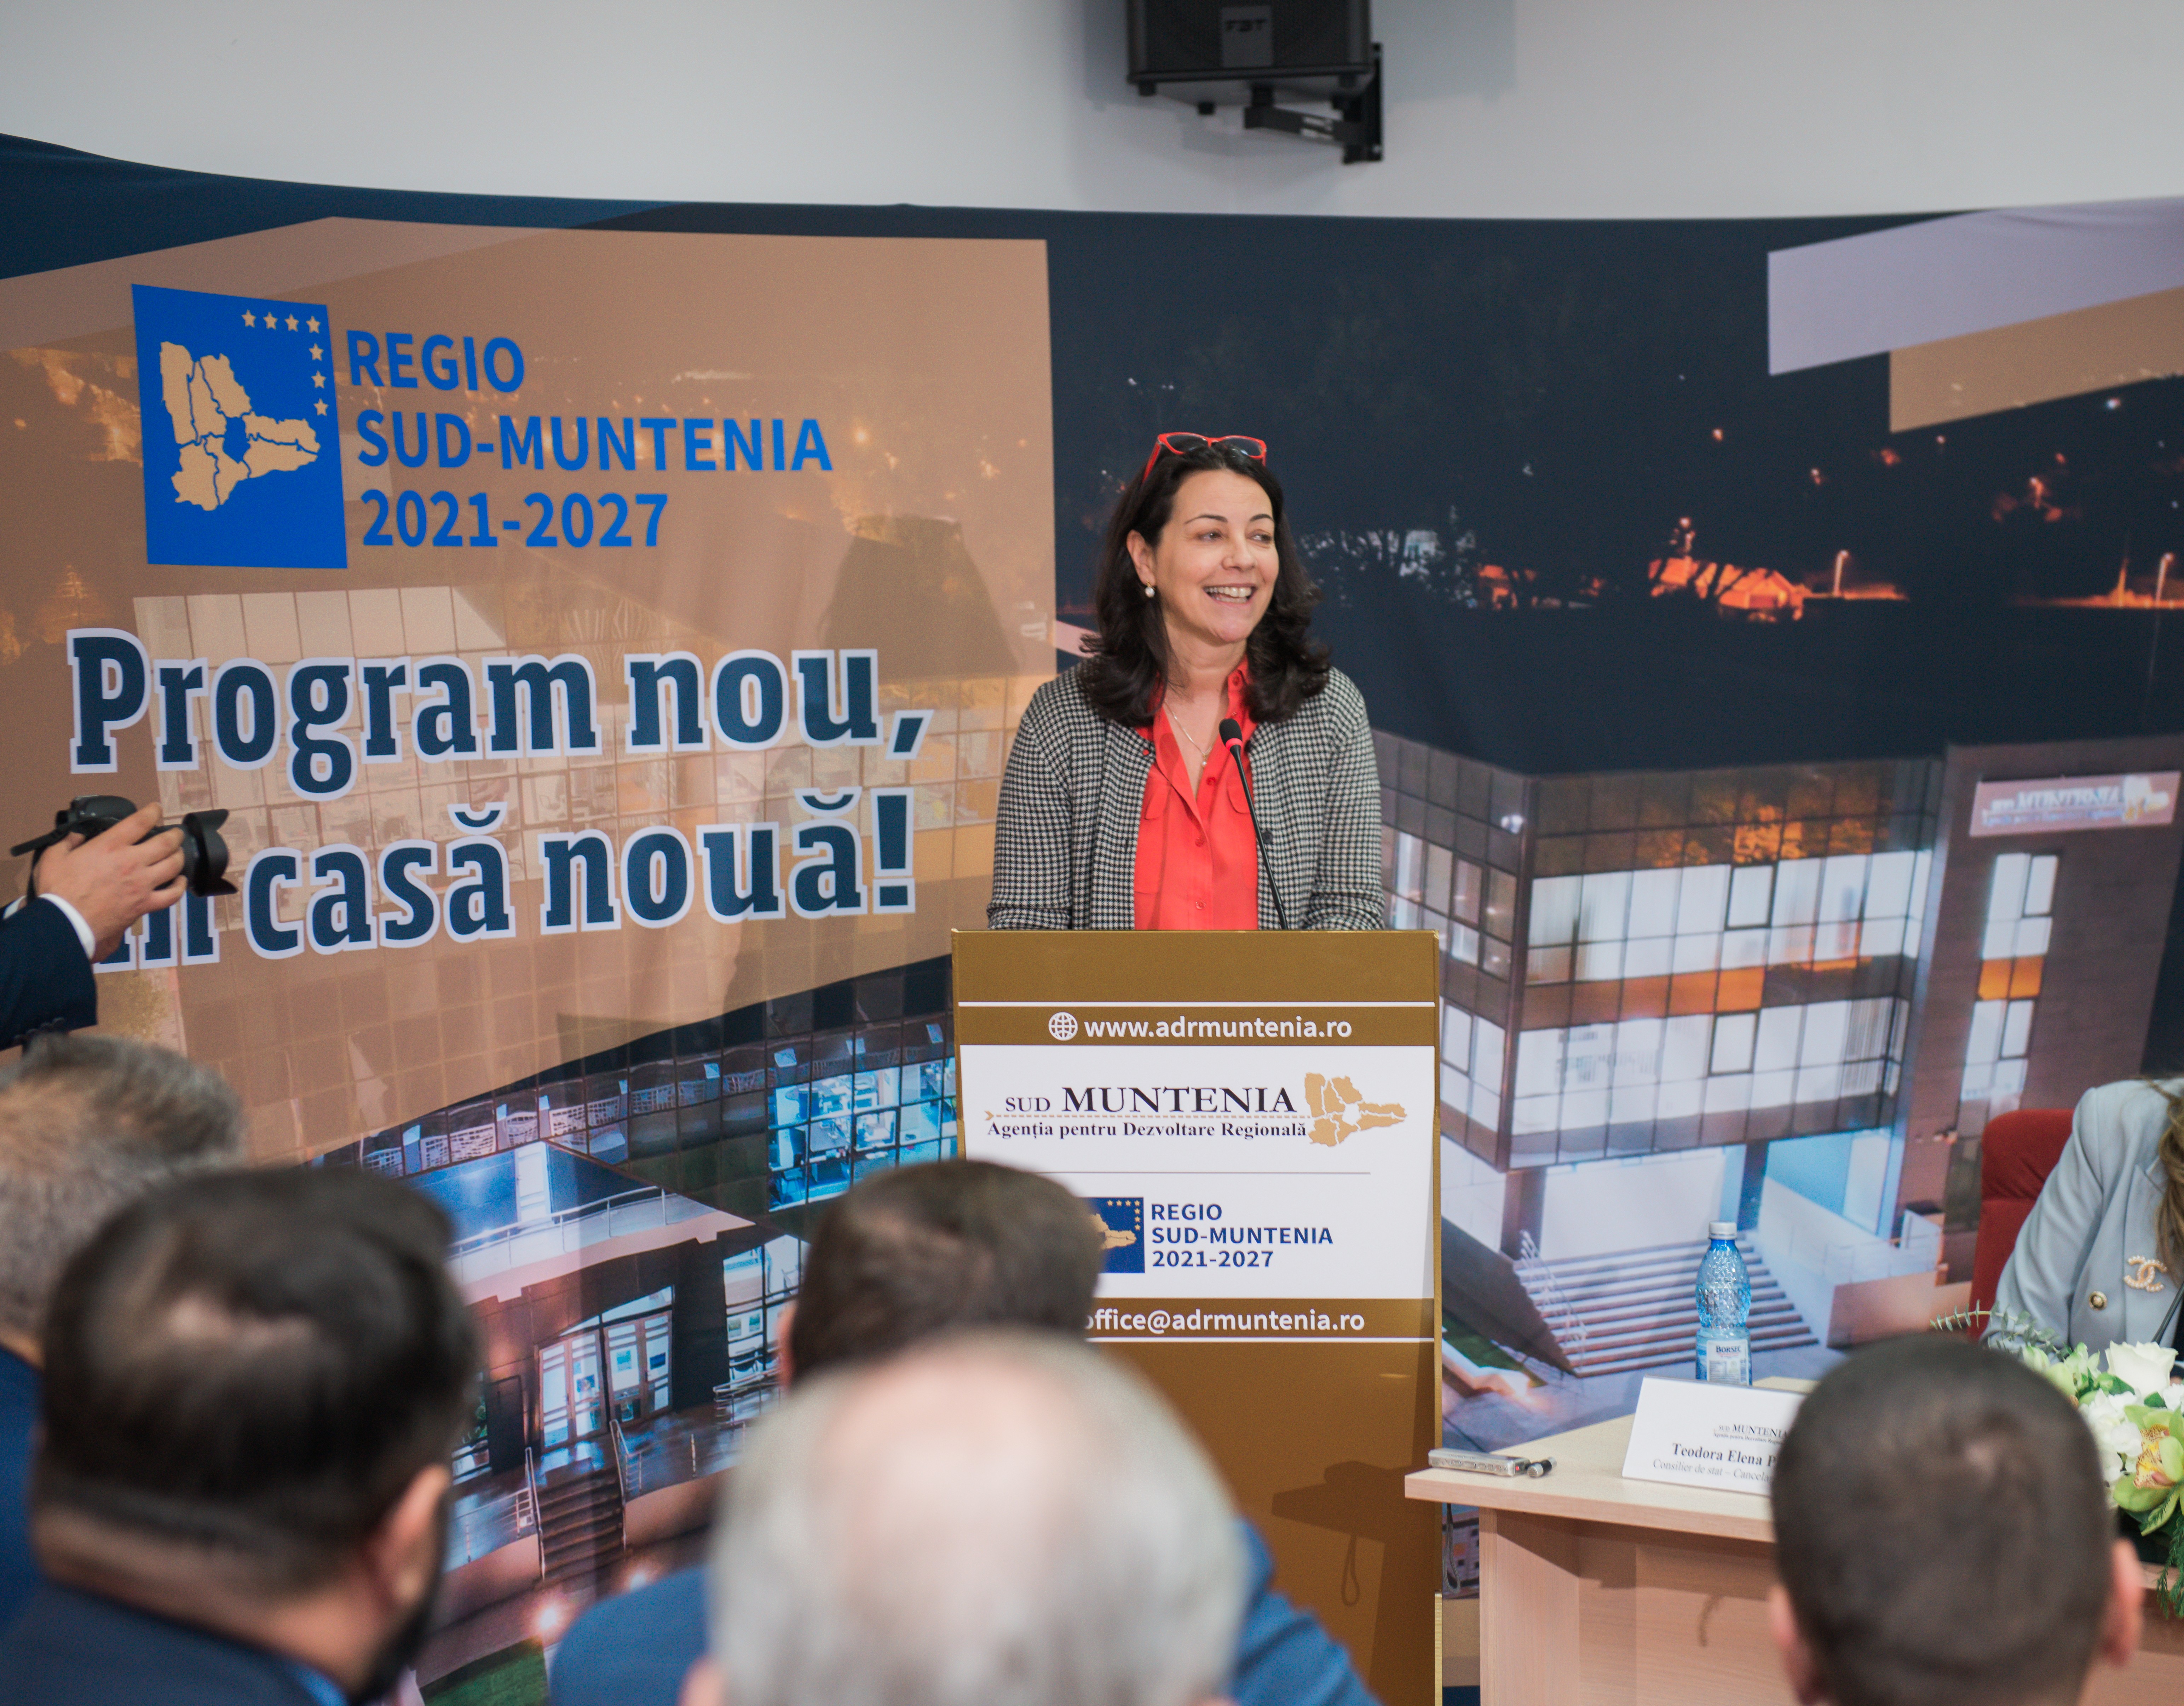 Sofia Alves: „Descentralizarea implementării Programelor Regionale către Agenții este o decizie foarte importanta, acestea știind cel mai bine care sunt nevoile municipalităților, întreprinderilor, școlilor și universităților locale”